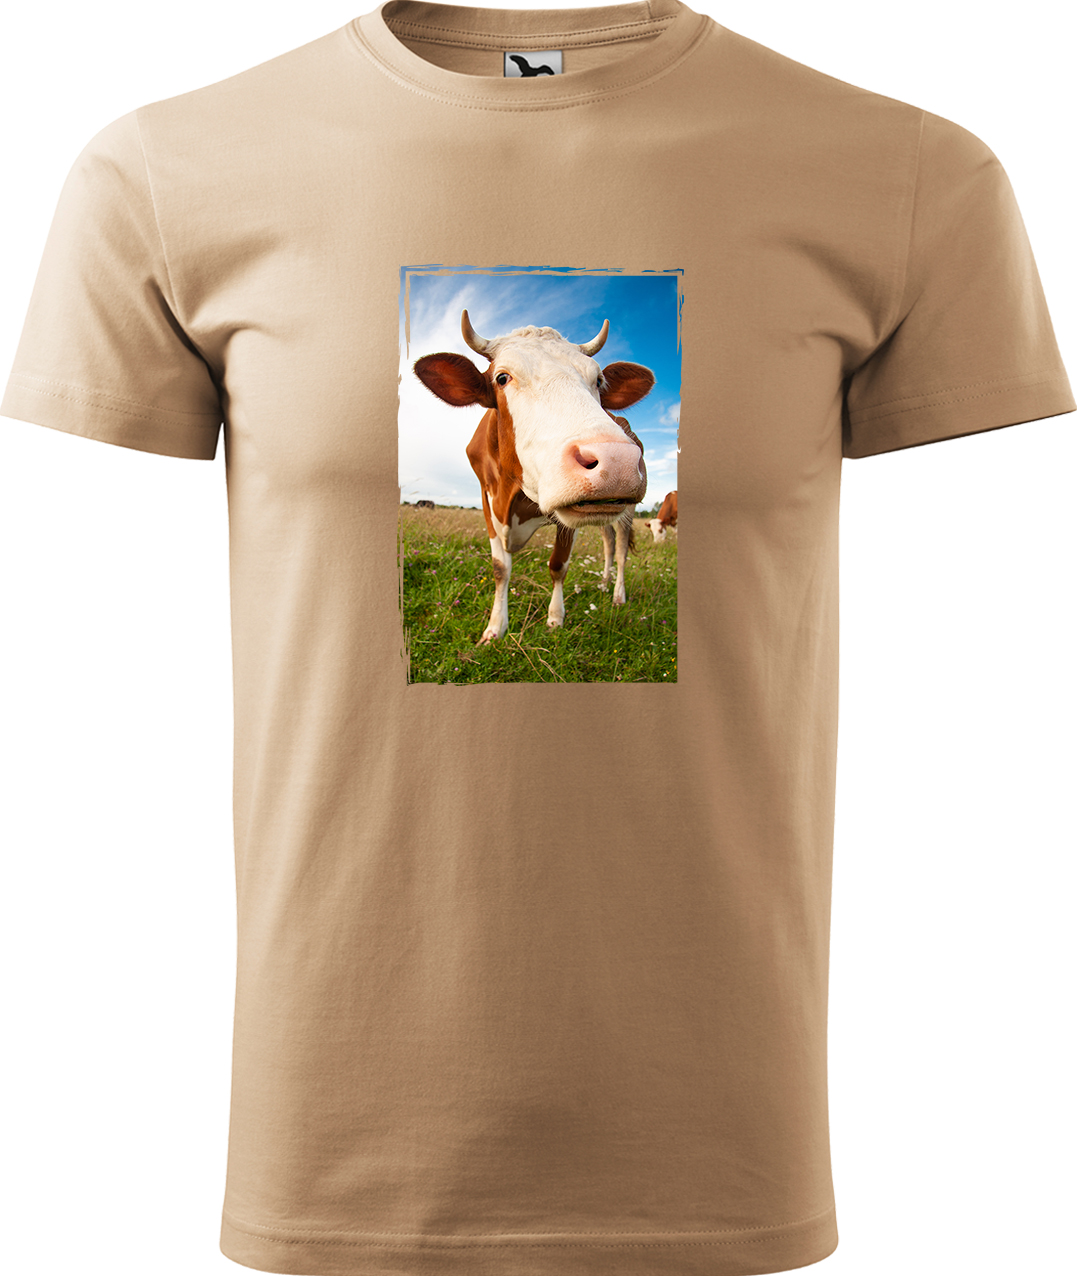 Pánské tričko s krávou - Na pastvě Velikost: M, Barva: Písková (08), Střih: pánský